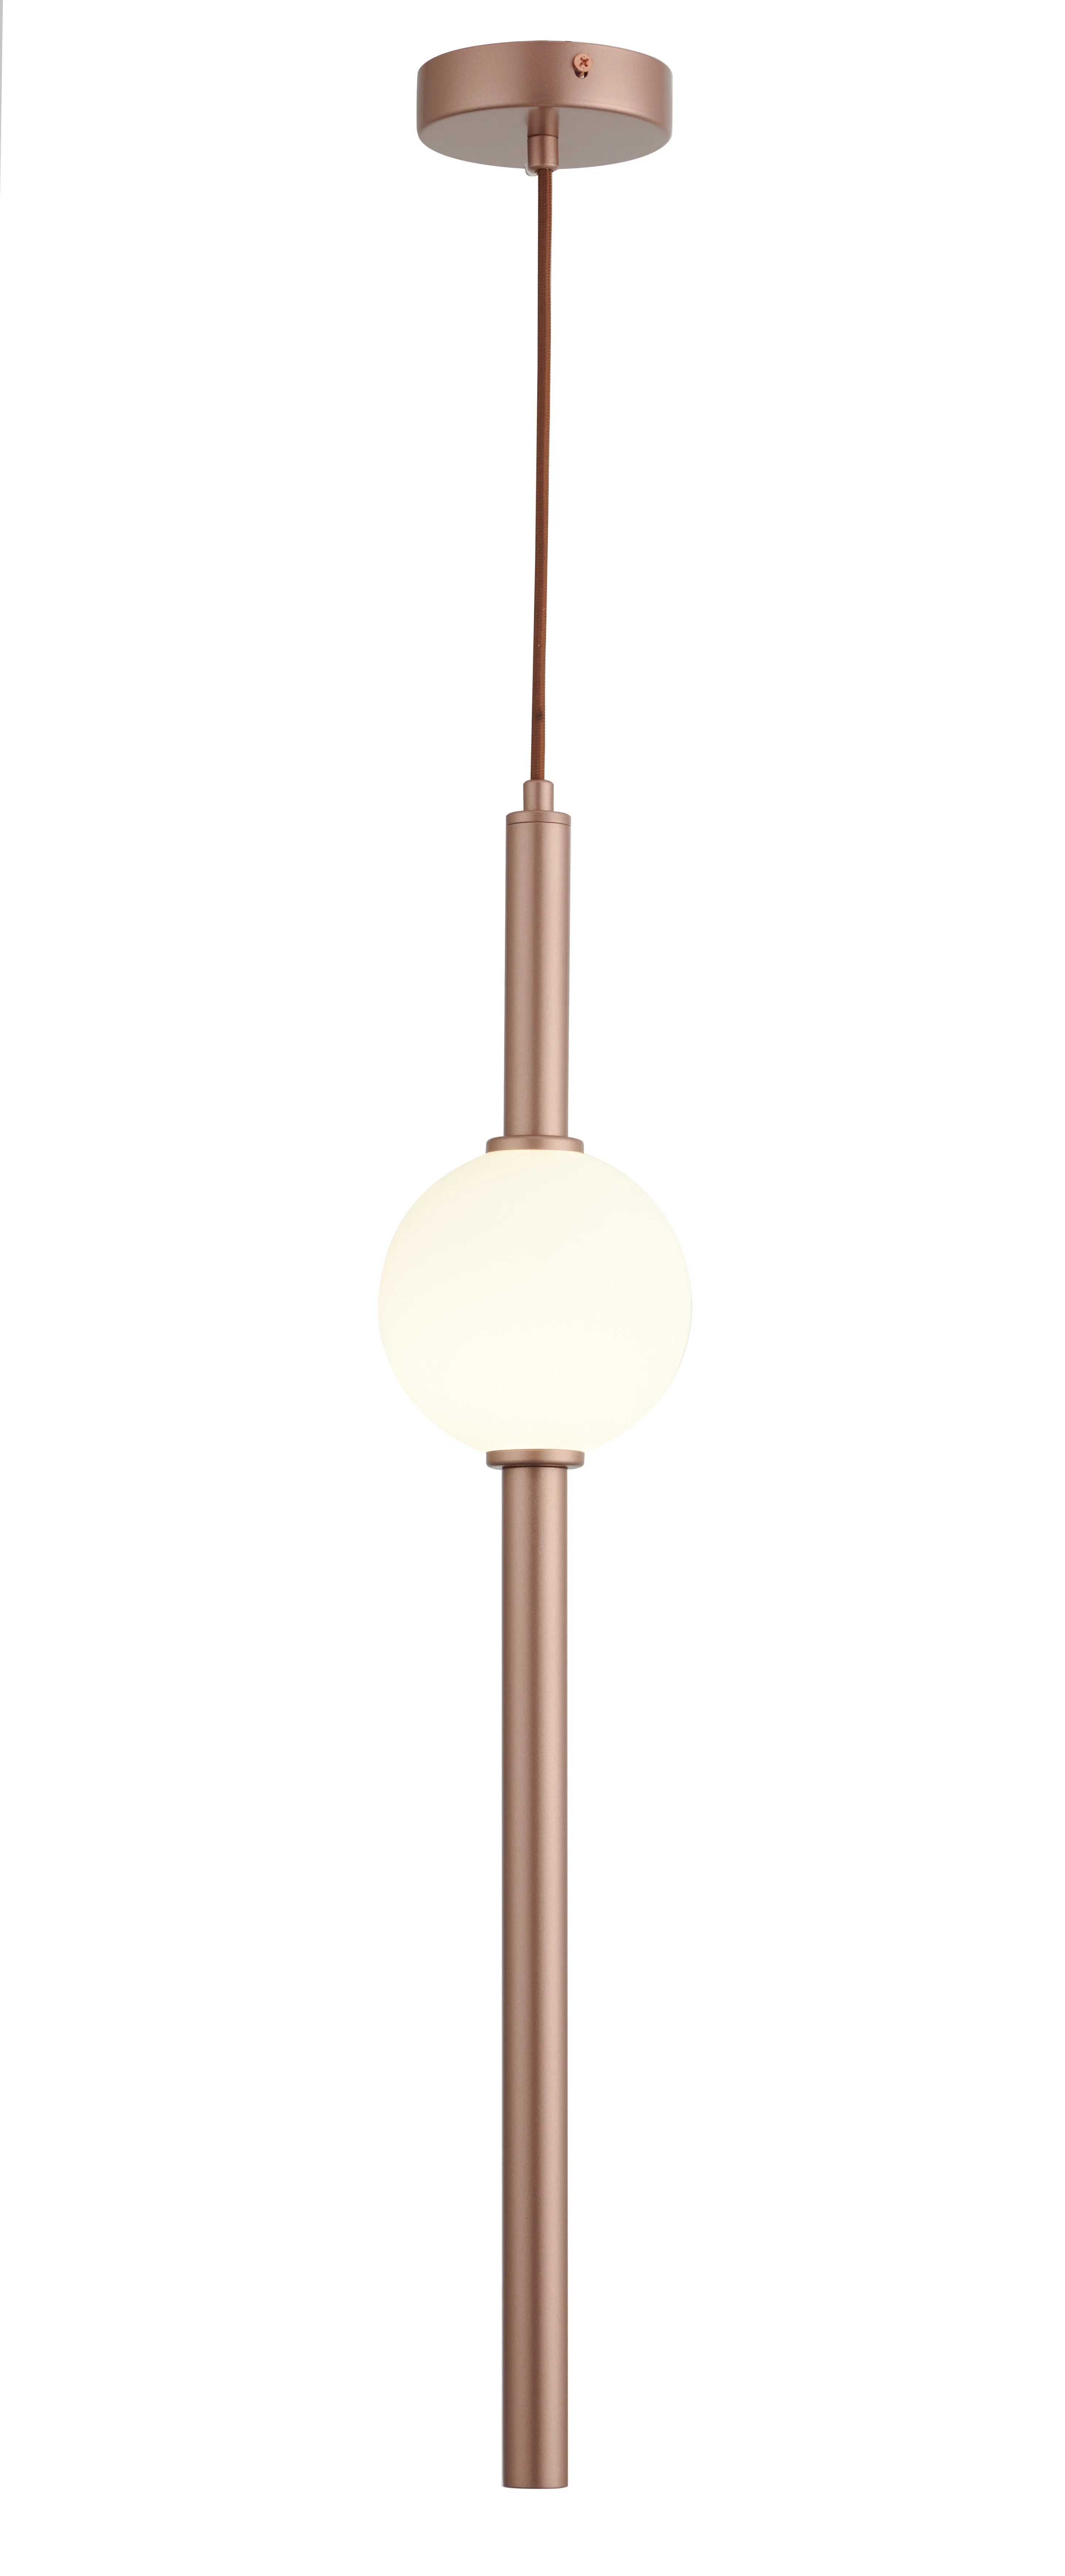 2022 New Design Modern Linear Design Hanging Light, Pendant Light Glass Shade Pendant Lamp